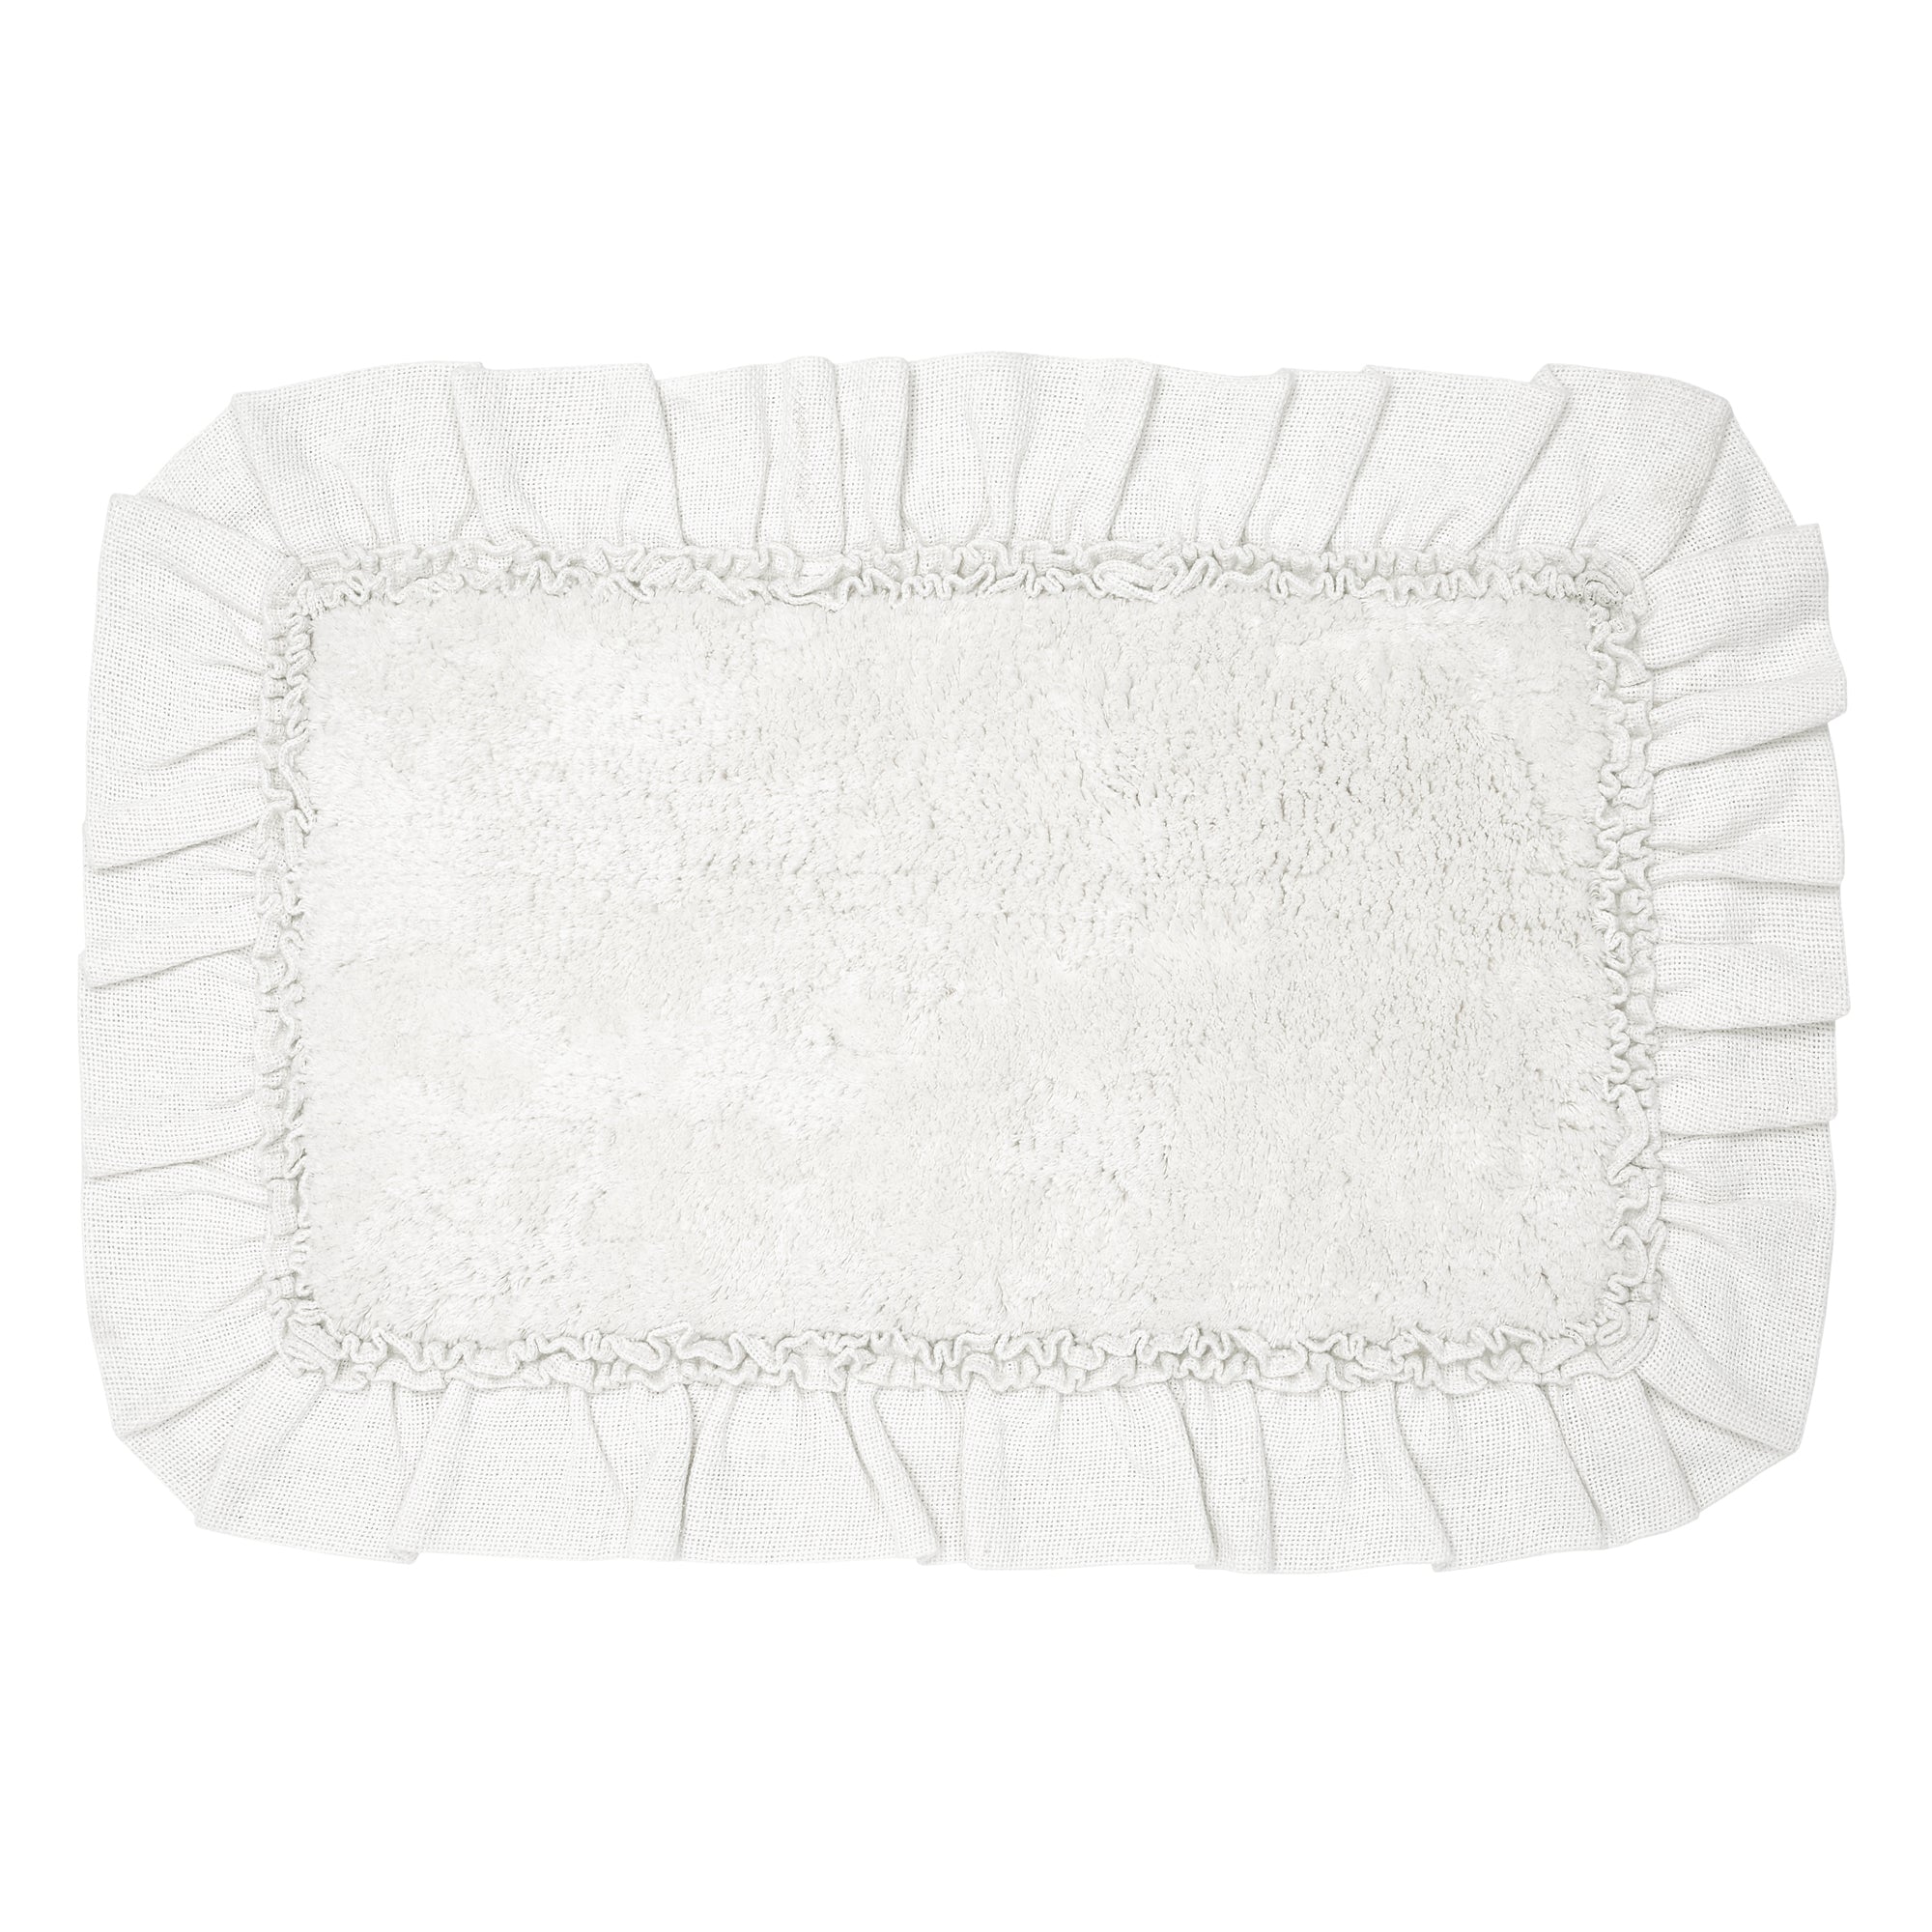 Burlap Antique White Bathmat 27x48